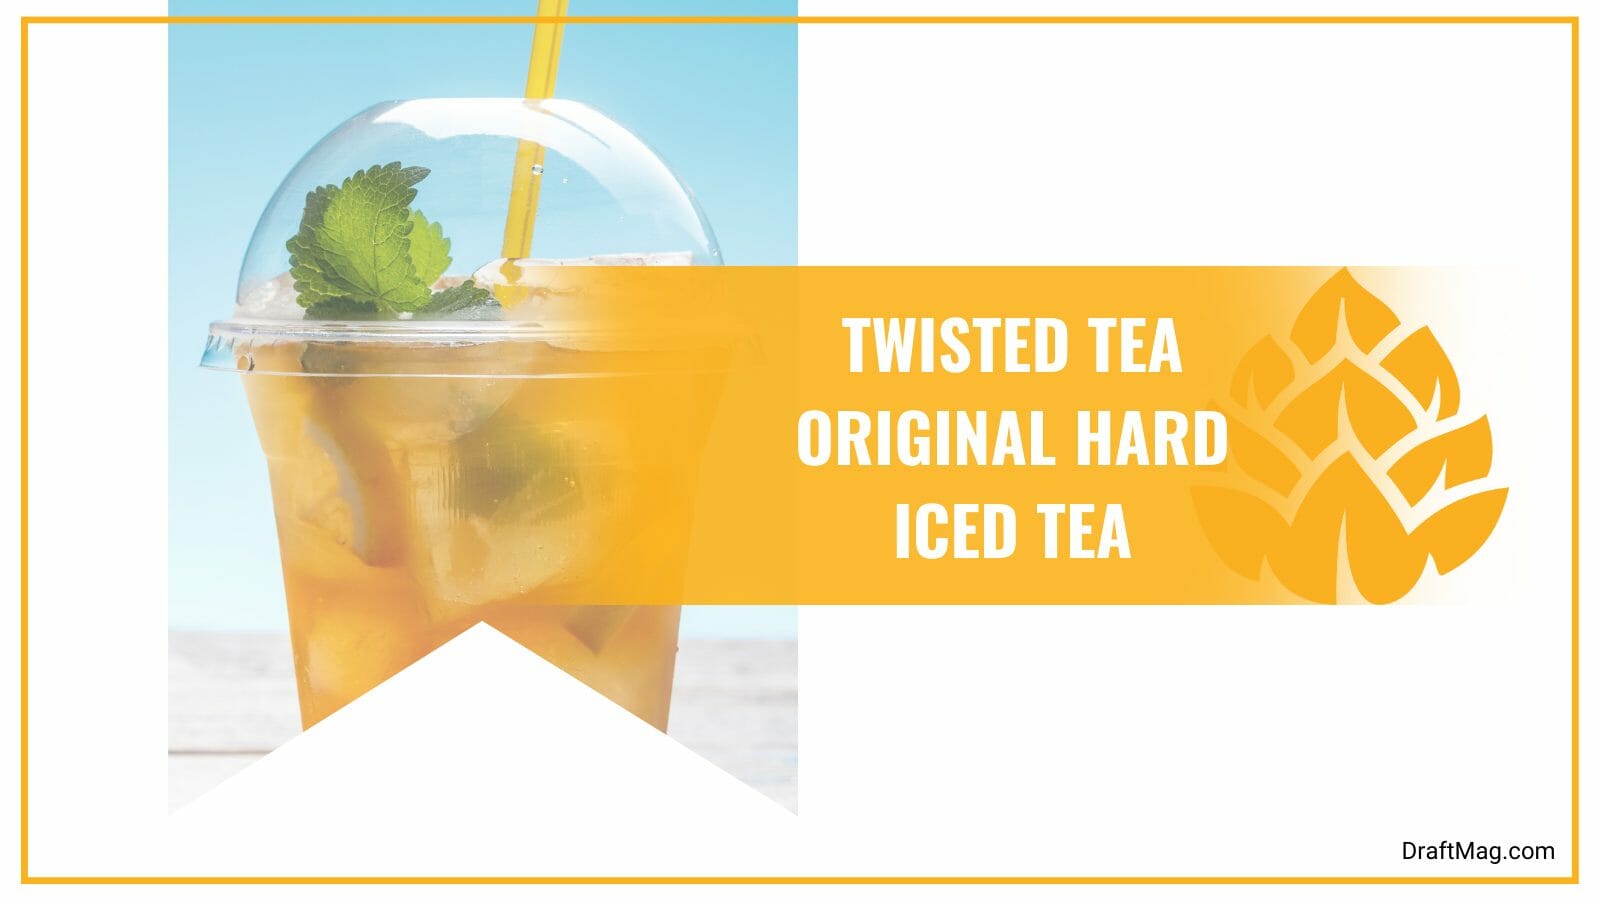 Twisted tea original hard iced tea